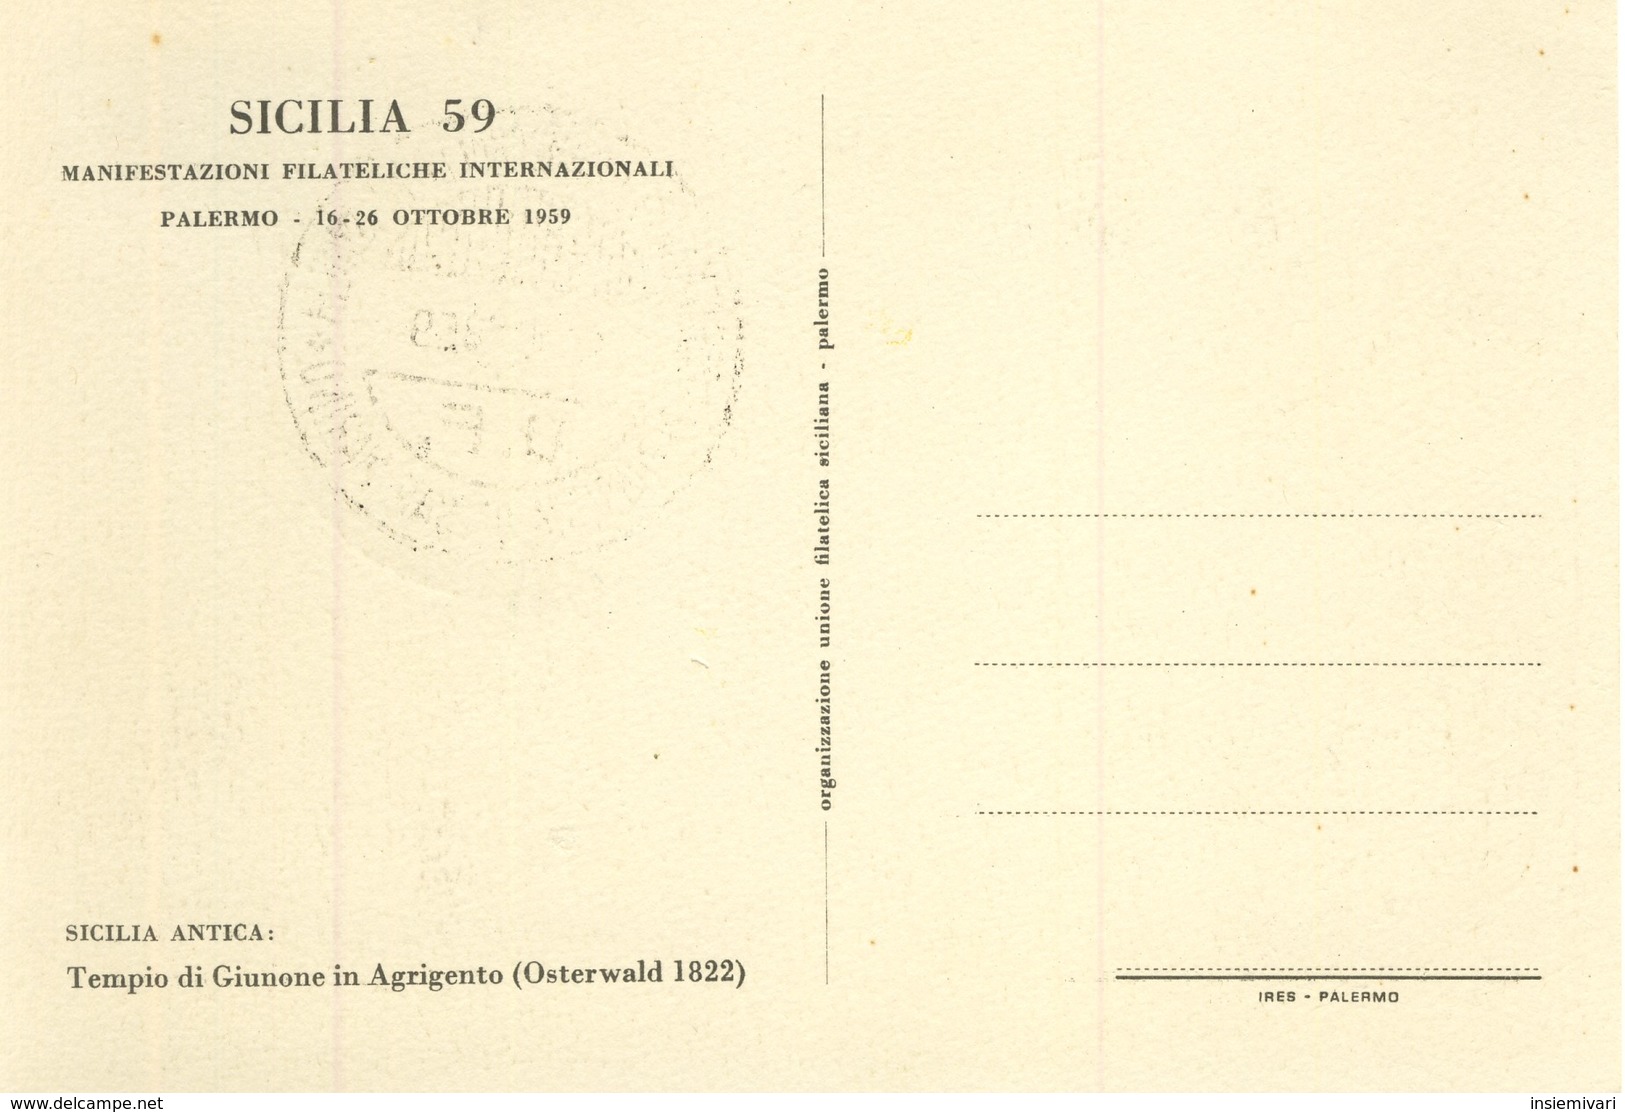 SAN MARINO - 1959 - Centenario dei primi francobolli di Sicilia.fdc su 6 cartoline.£.1+£.2+£.3+£.4+£.5+£.25.